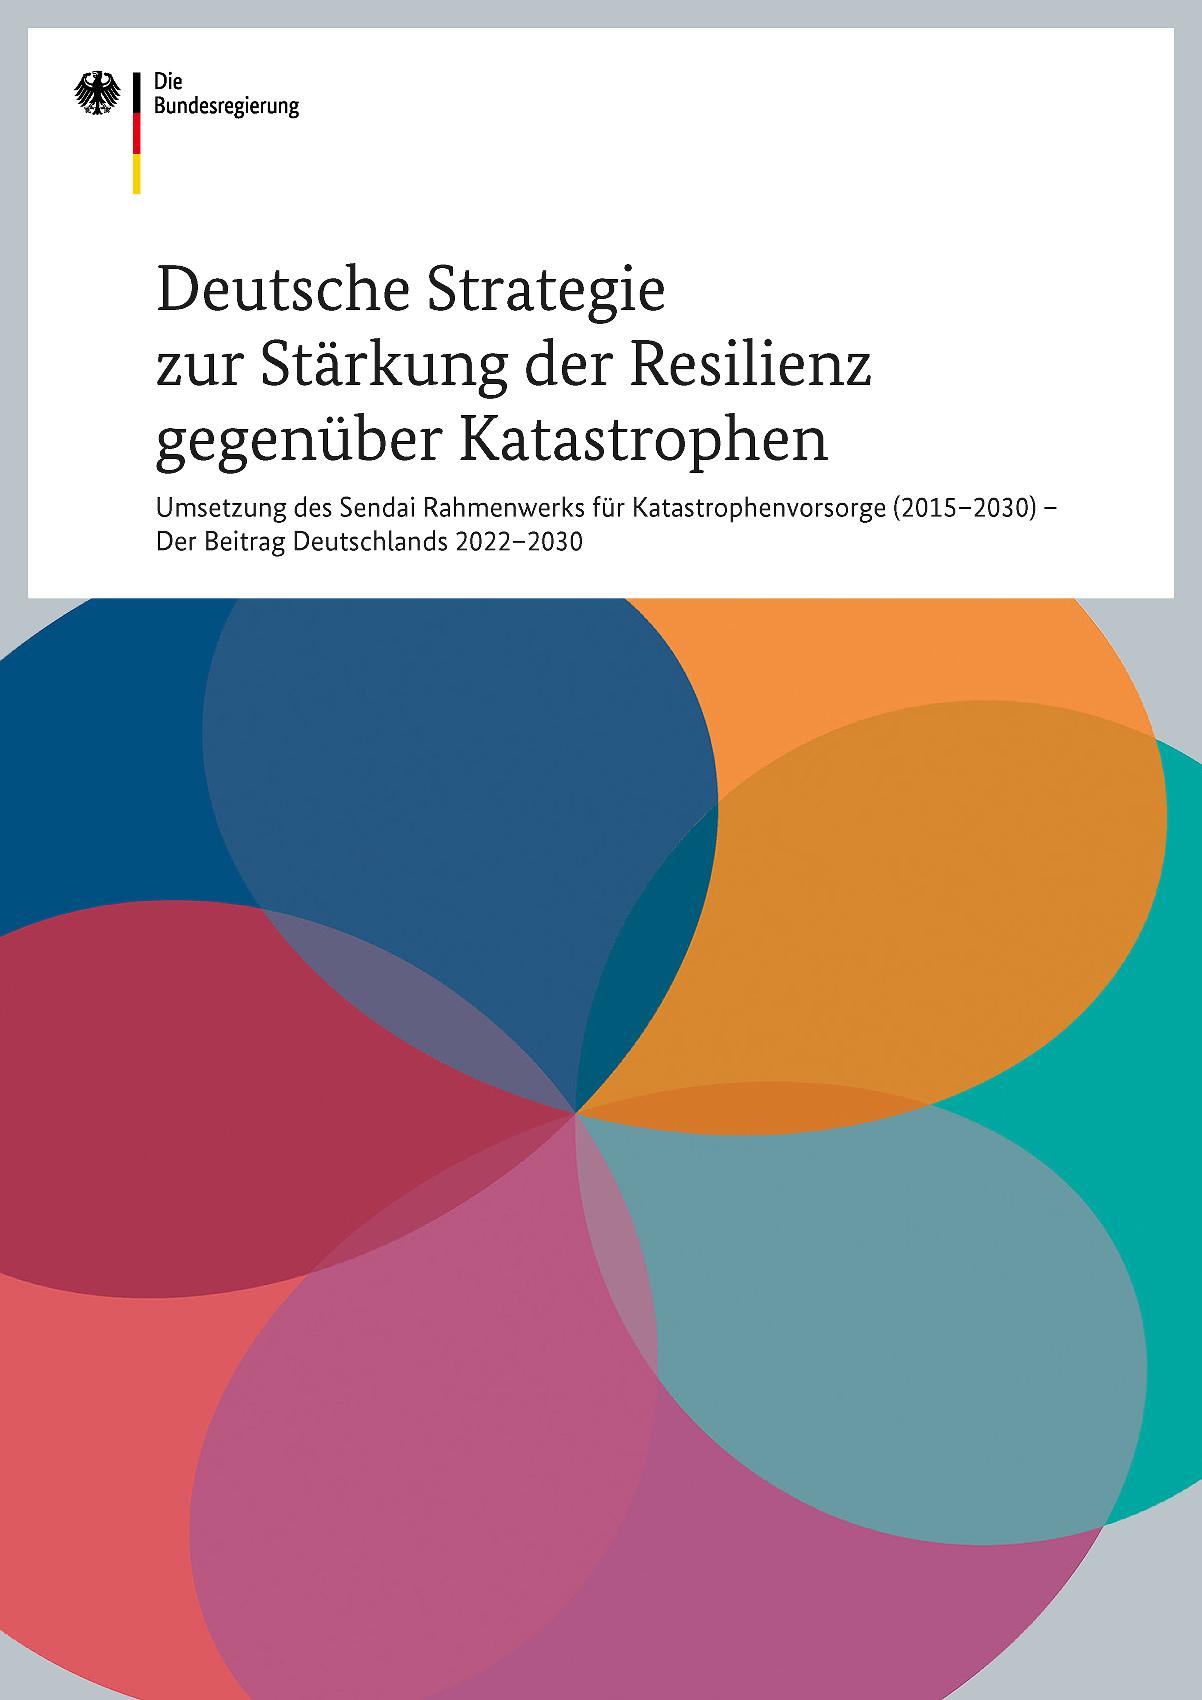 Titelbild der Deutschen Strategie zur Stärkung der Resilienz gegenüber Katastrophen